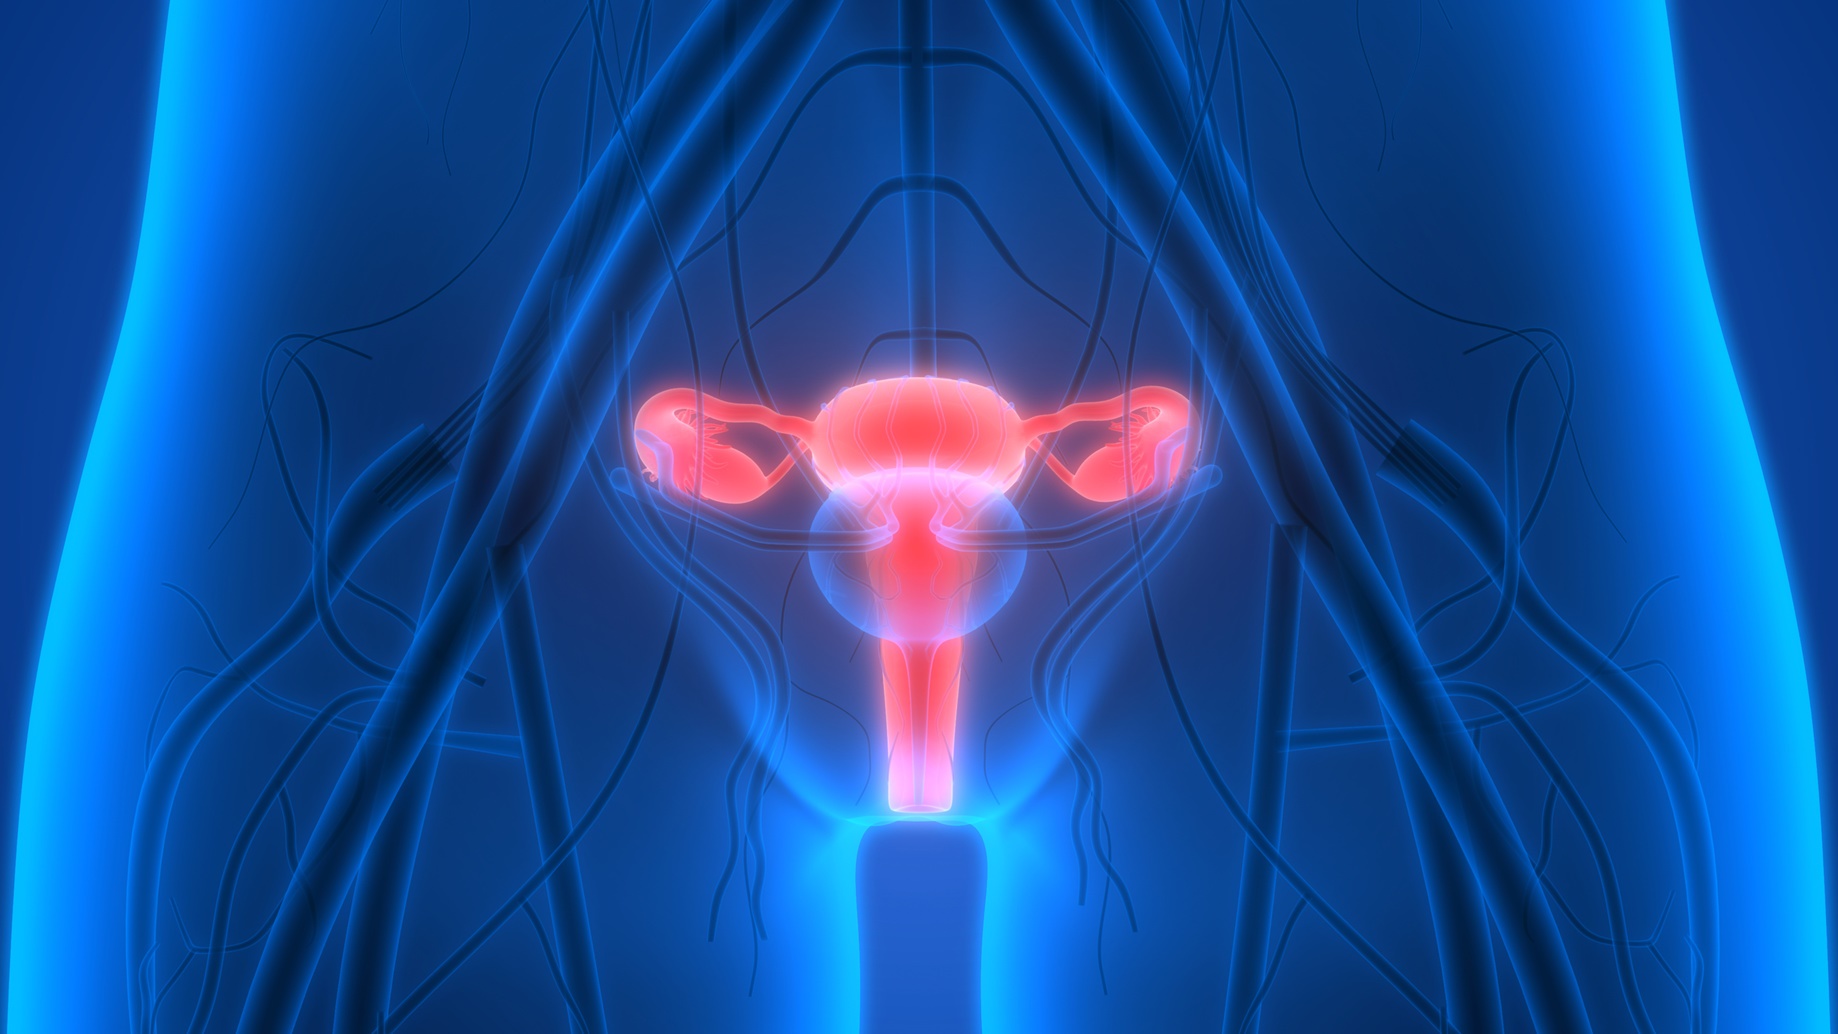 Le syndrome des ovaires polykystiques touche une femme sur dix.&nbsp;© magicmine, Fotolia